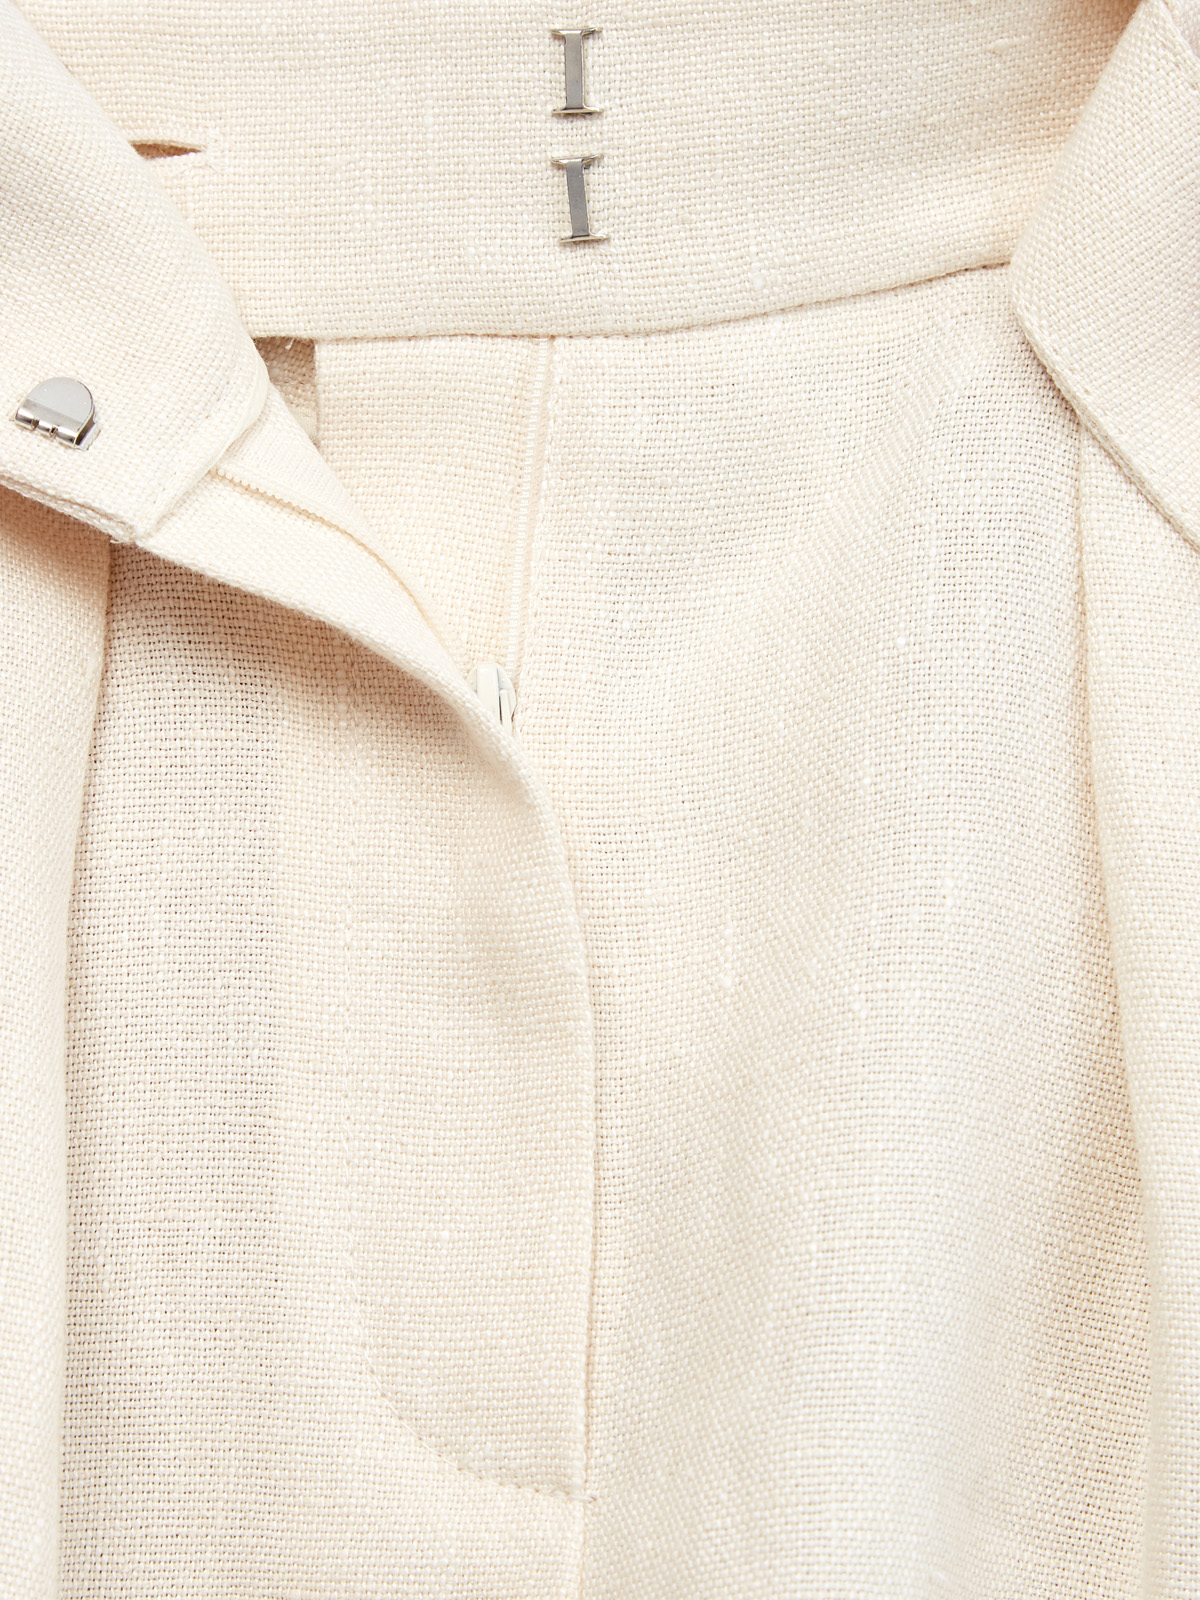 Высокие шорты City Tailored из дышащей льняной ткани BRUNELLO CUCINELLI, цвет бежевый, размер 36;38;42;46;40 - фото 7